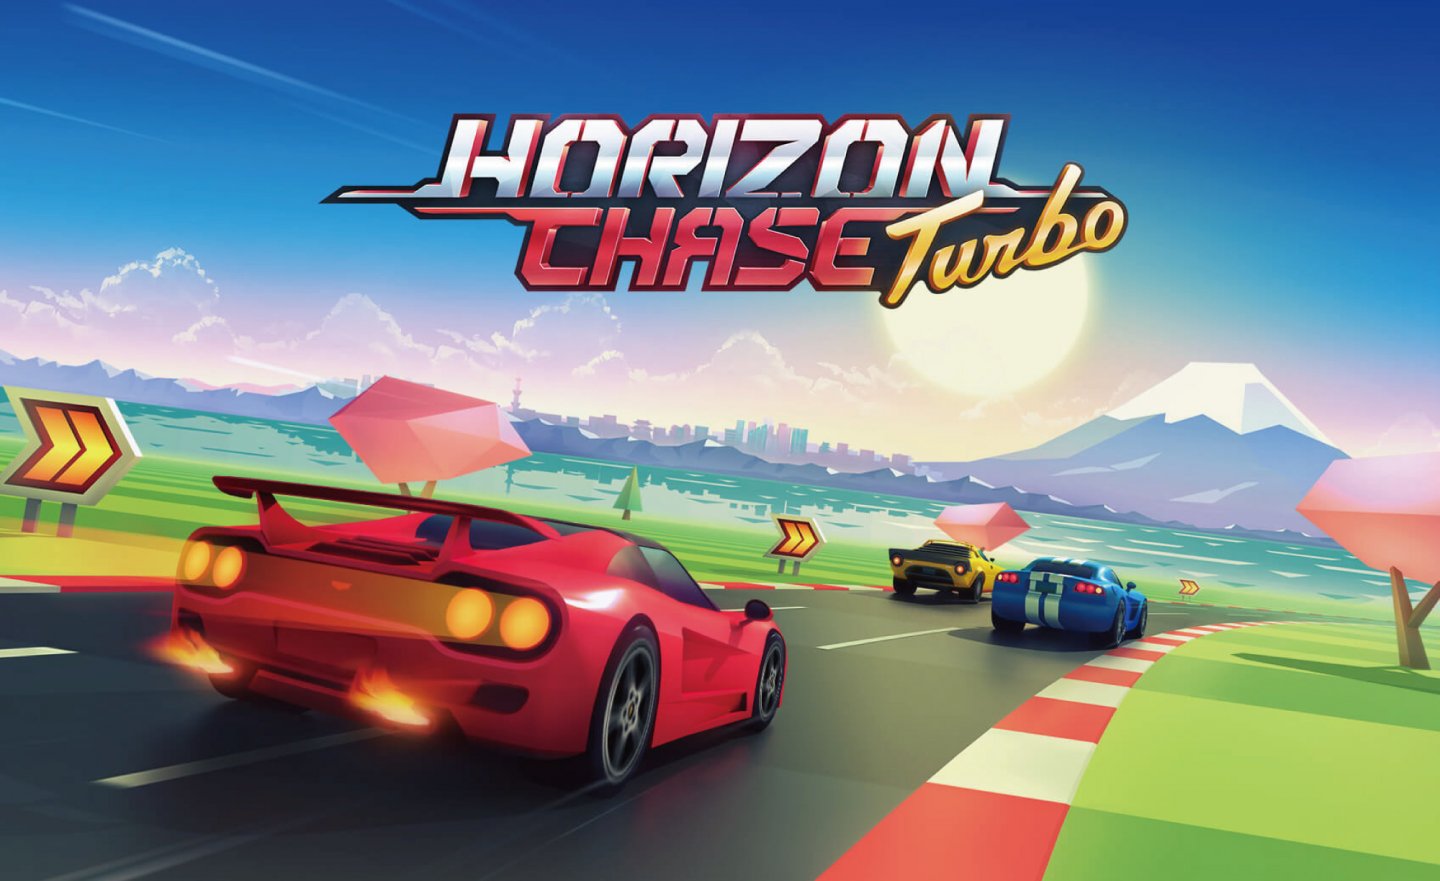 【限時免費】24 小時限定放送《Horizon Chase Turbo 地平線追擊:渦輪》，2022 年 12 月 18 日 00:00 截止